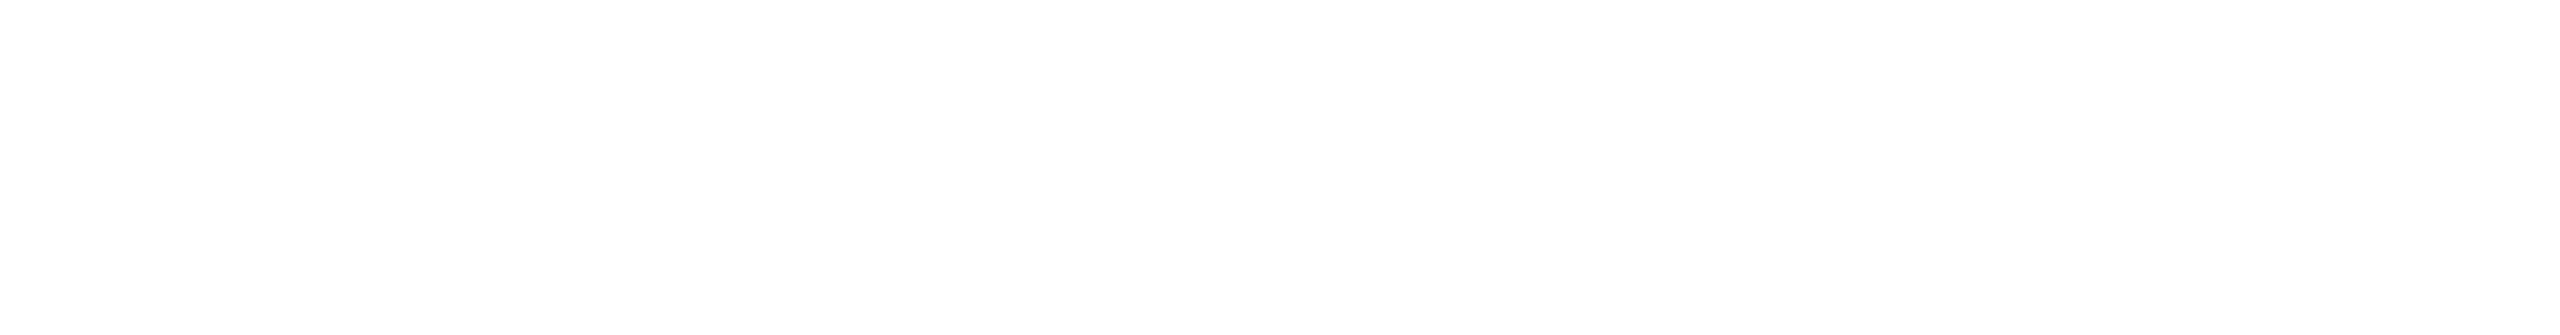 Populous_logo.svg-1